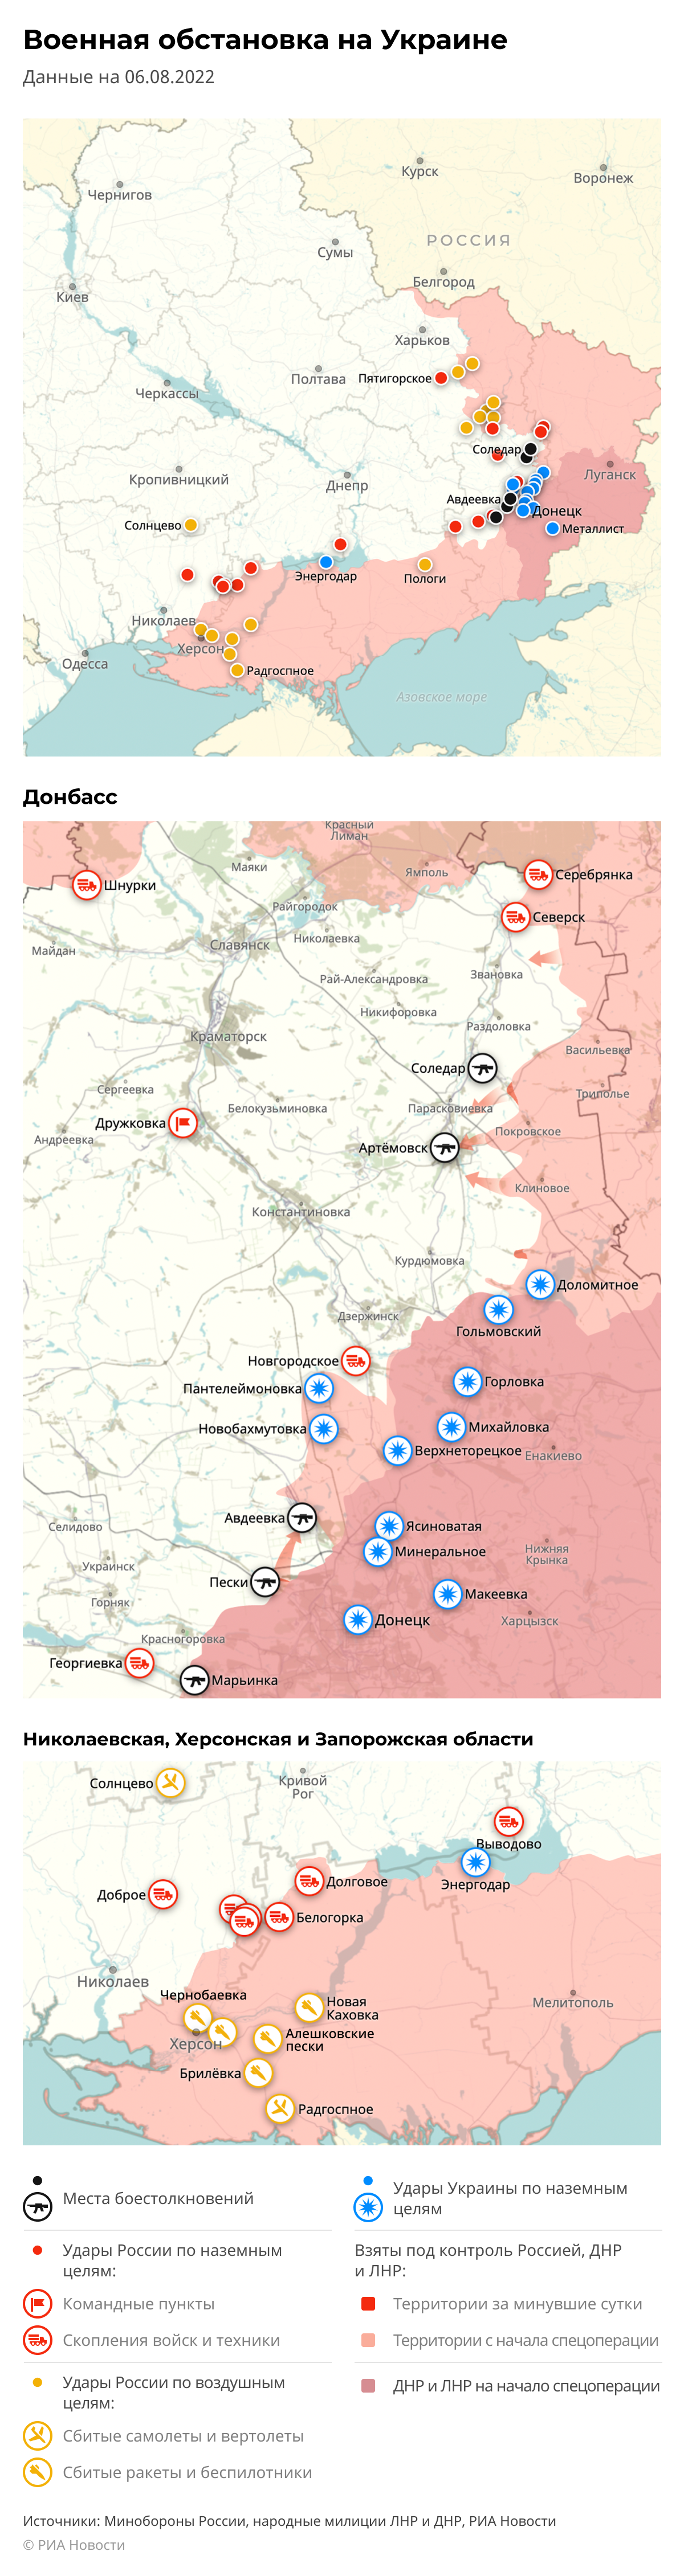 Карта спецоперации Вооруженных сил России на Украине на 06.08.2022